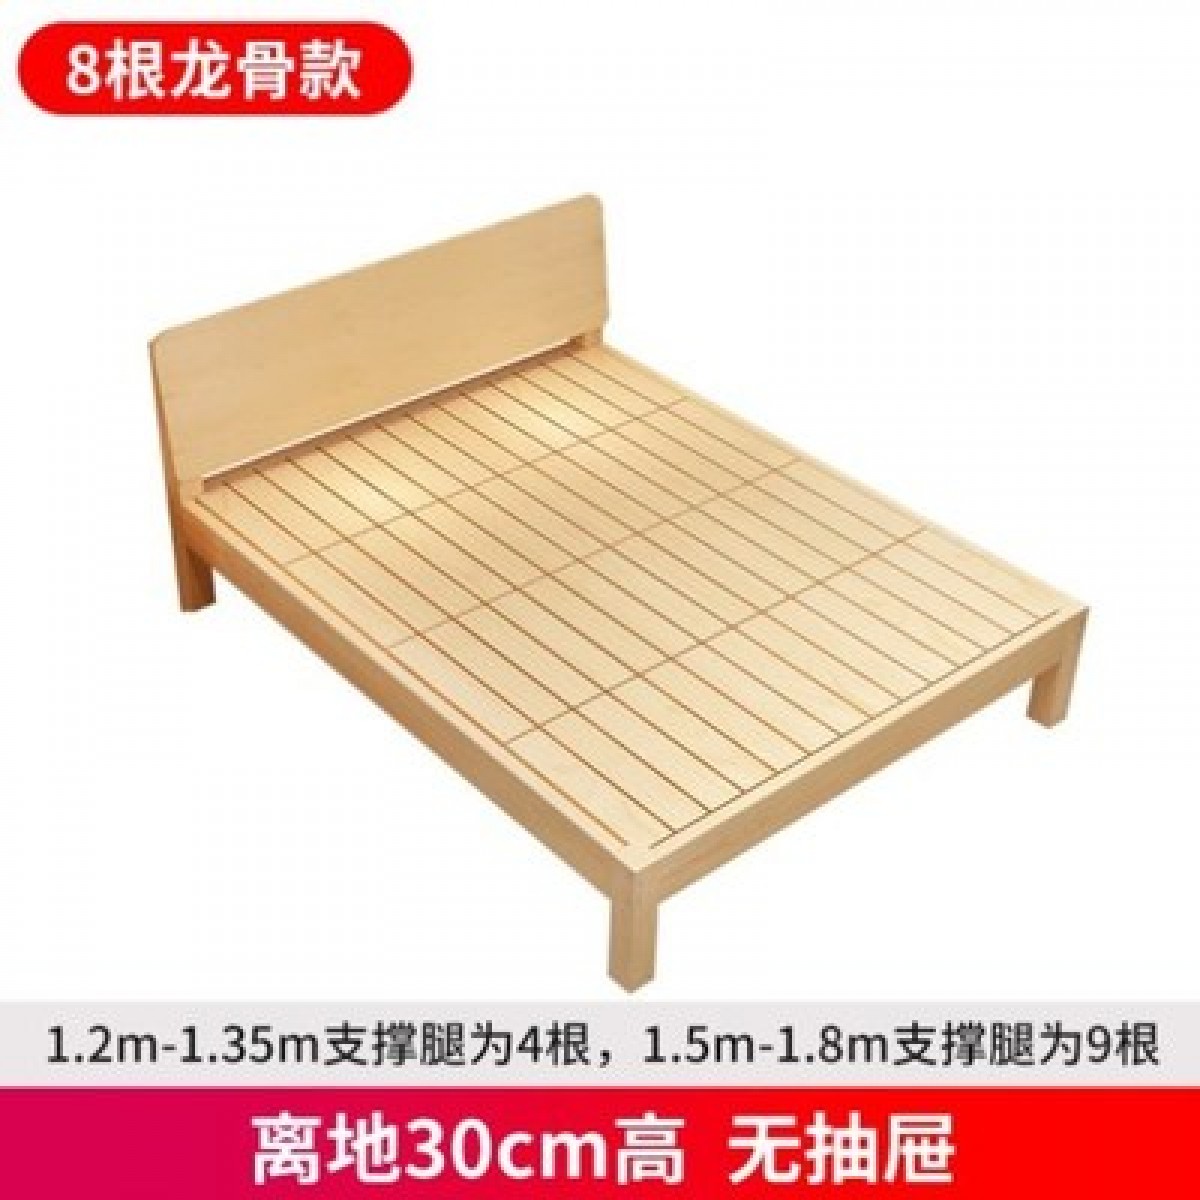 实木床1.8米现代简约双人床1.5米出租房经济型1.2米简易单人床架